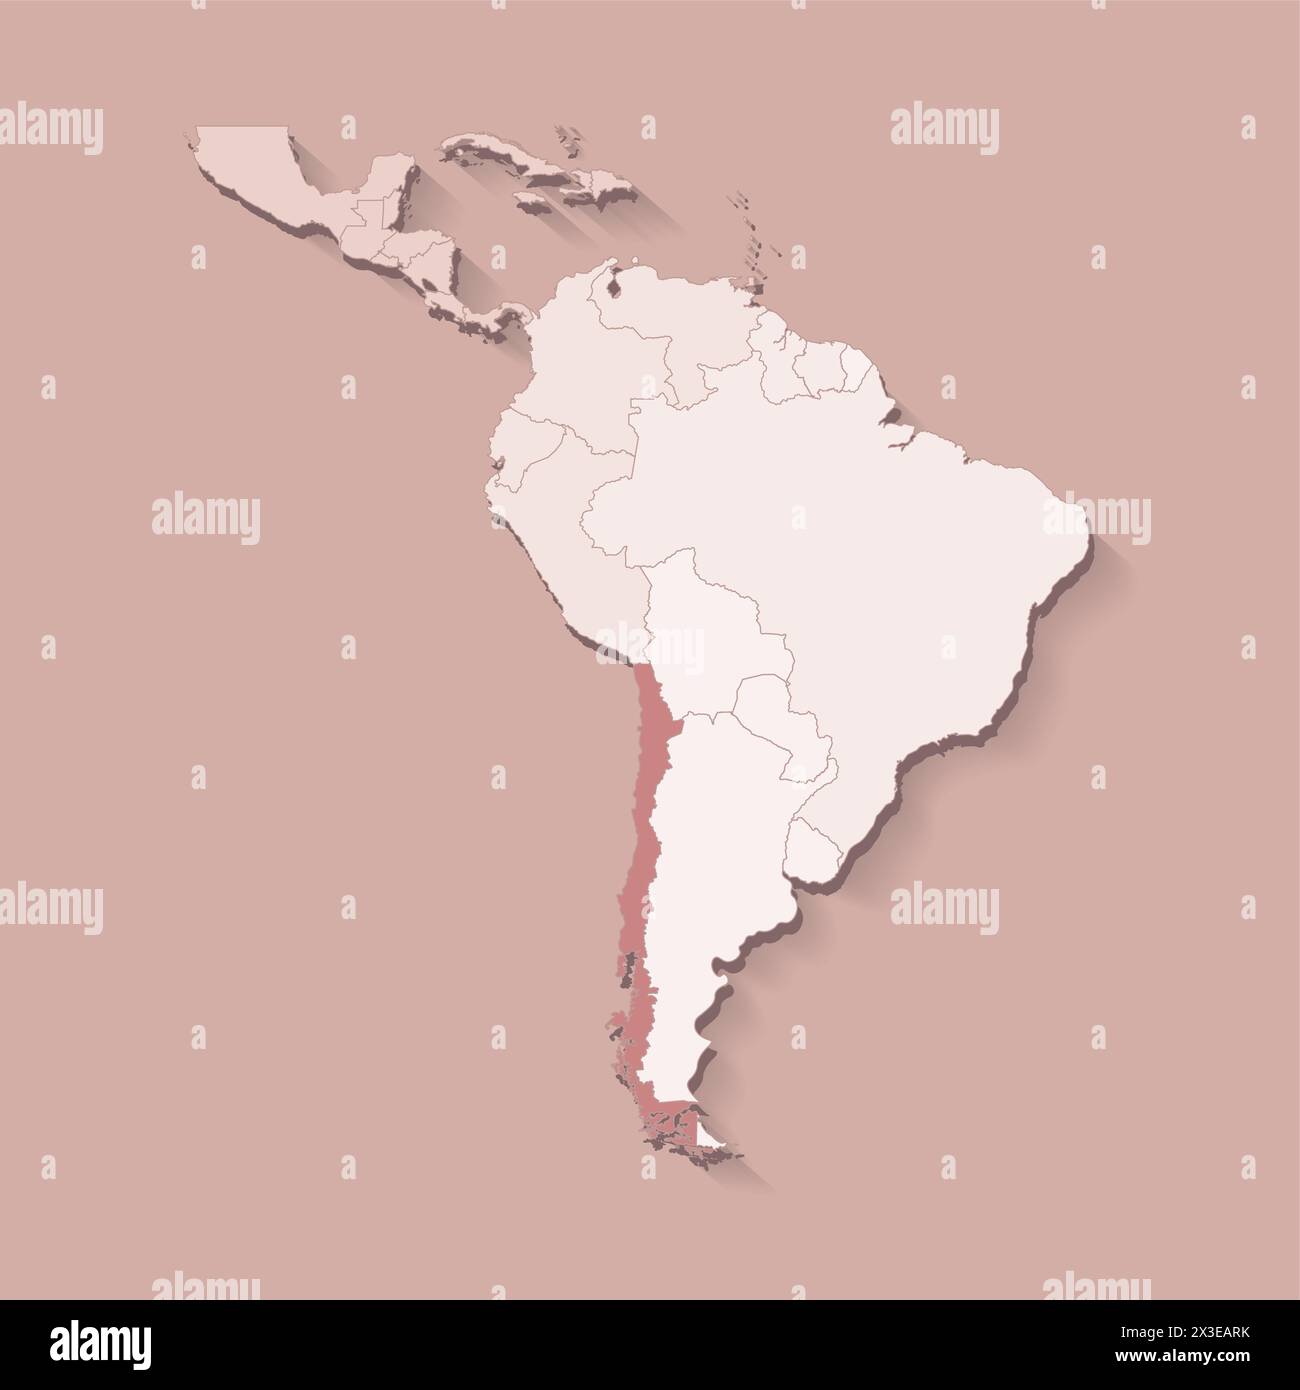 Vektor-Illustration mit Südamerika Land mit Grenzen von staaten und markiertem Land Chile. Politische Karte in braunen Farben mit Regionen. Beige Backgro Stock Vektor